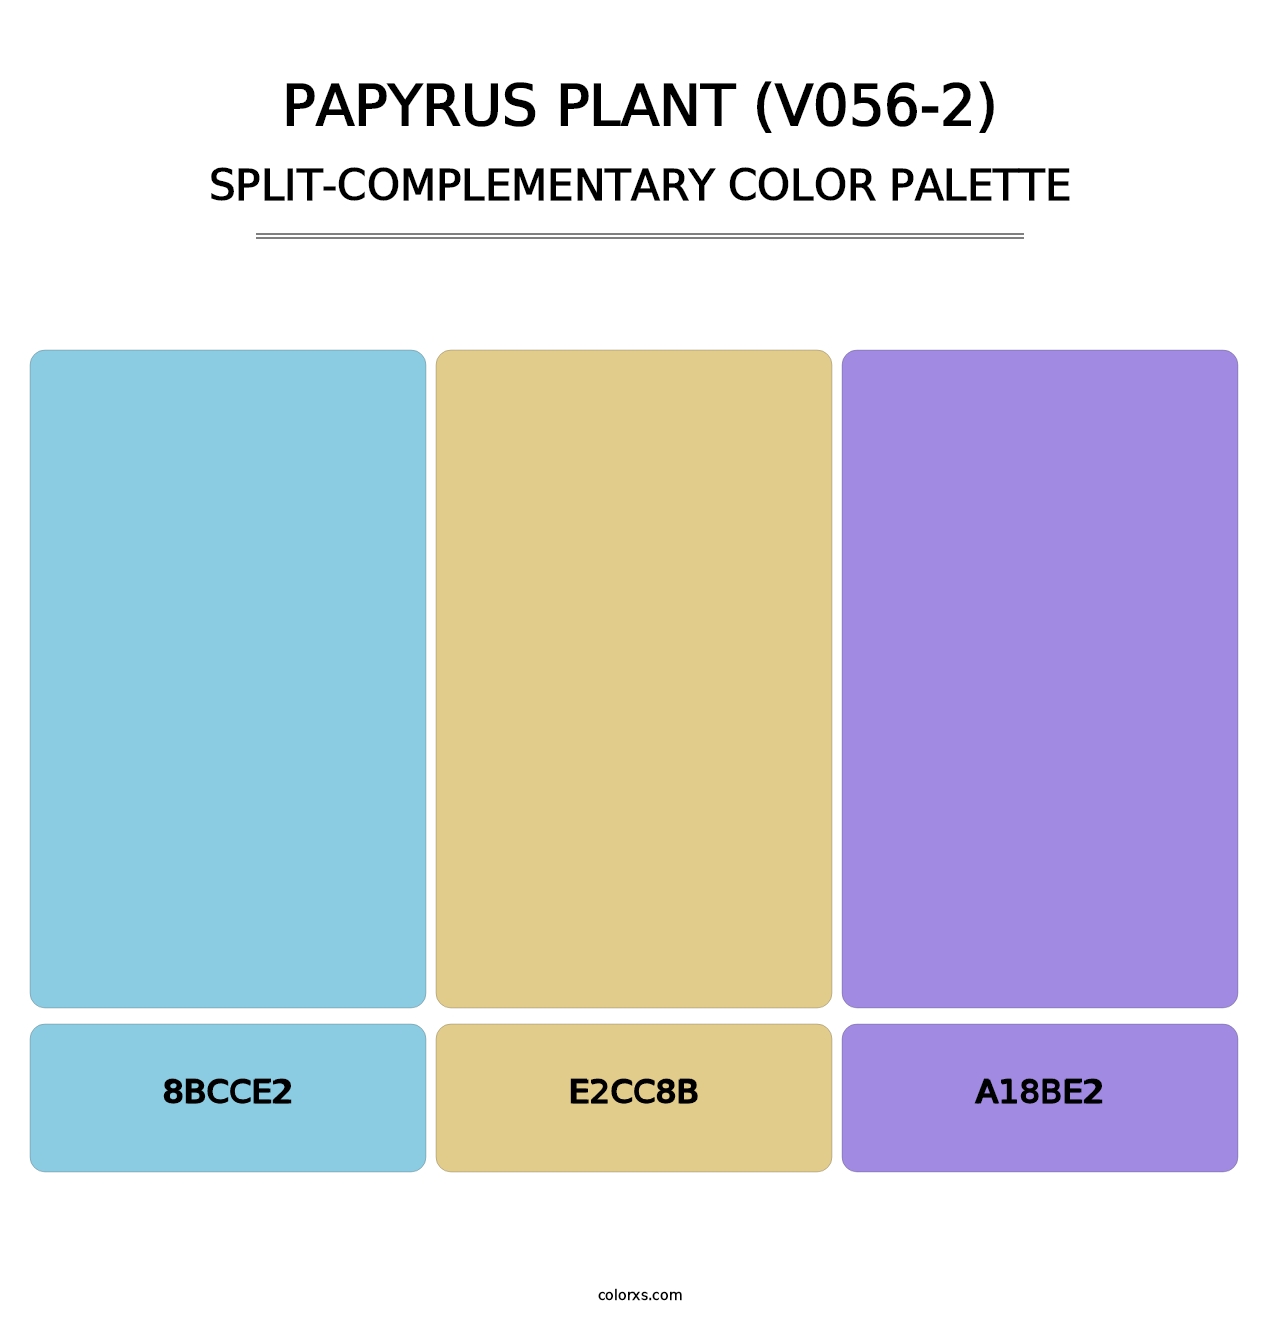 Papyrus Plant (V056-2) - Split-Complementary Color Palette